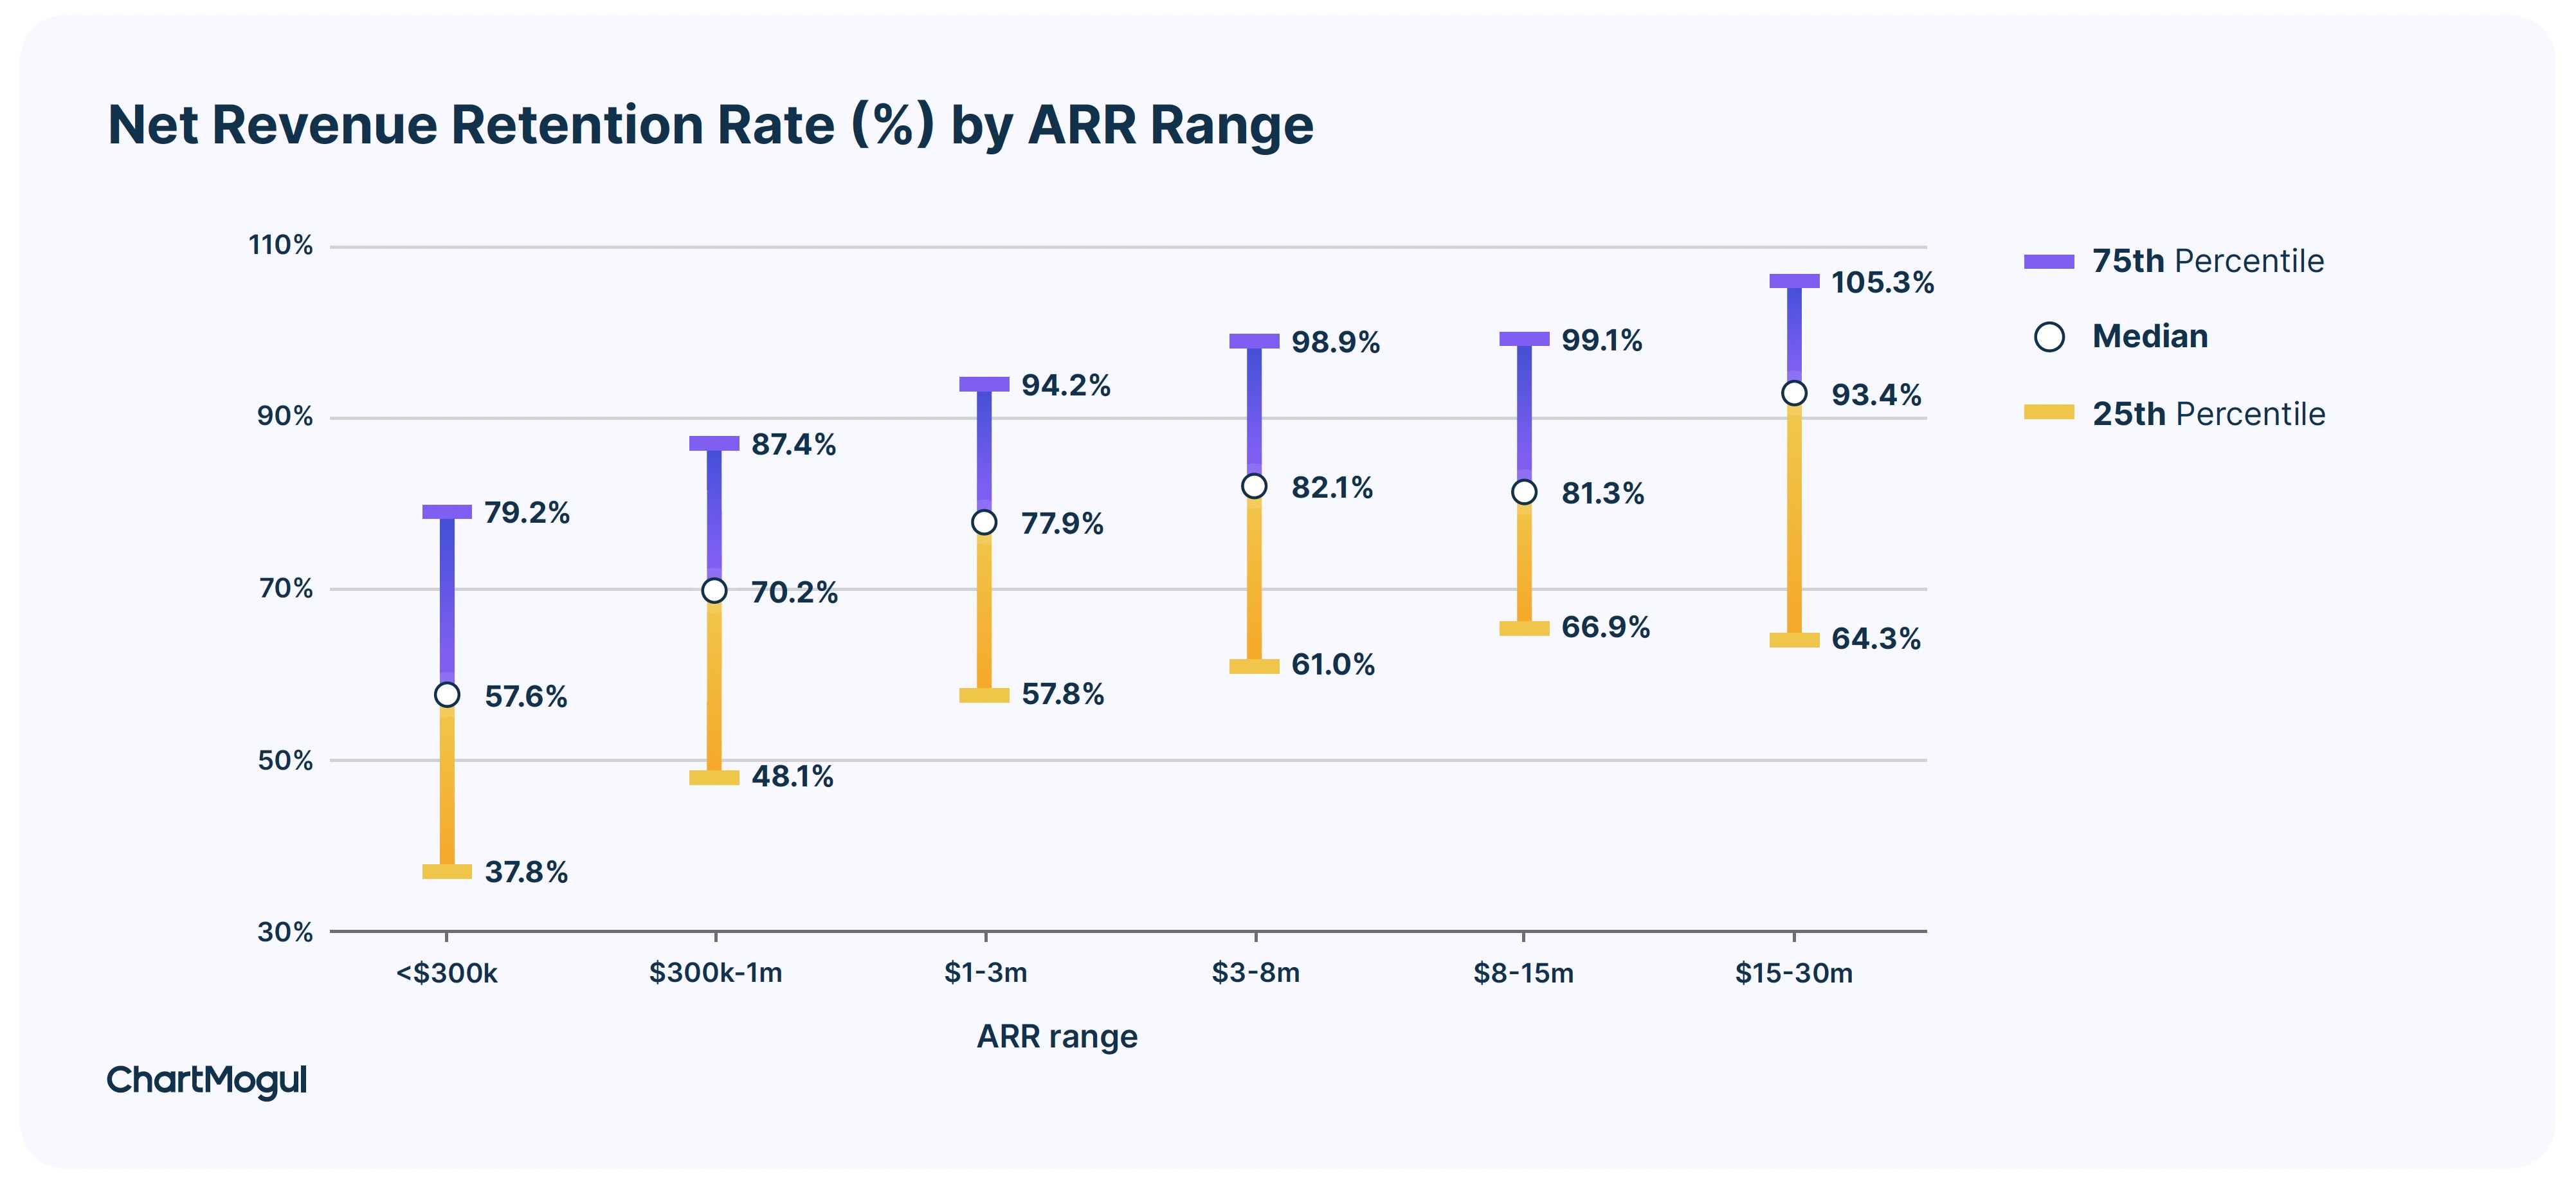 نرخ حفظ درآمد خالص (%) بر اساس محدوده ARR